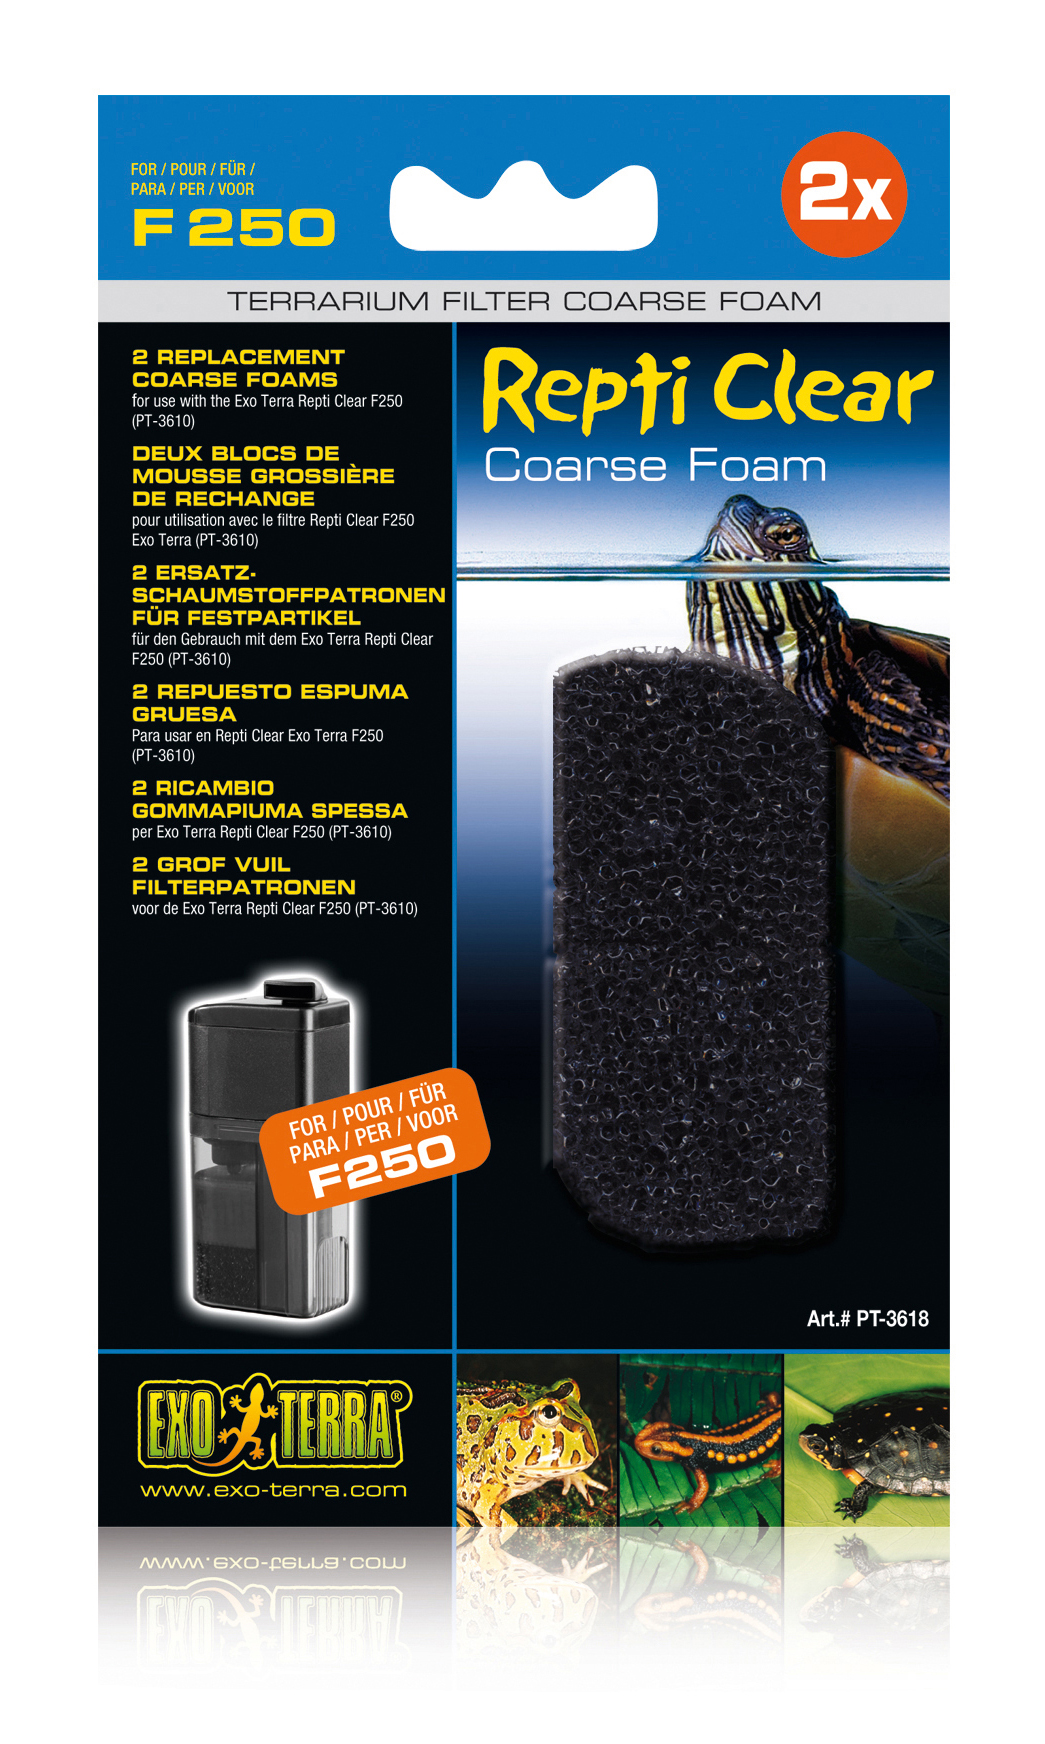 Ex repti clear f250 coarse foam - Product shot